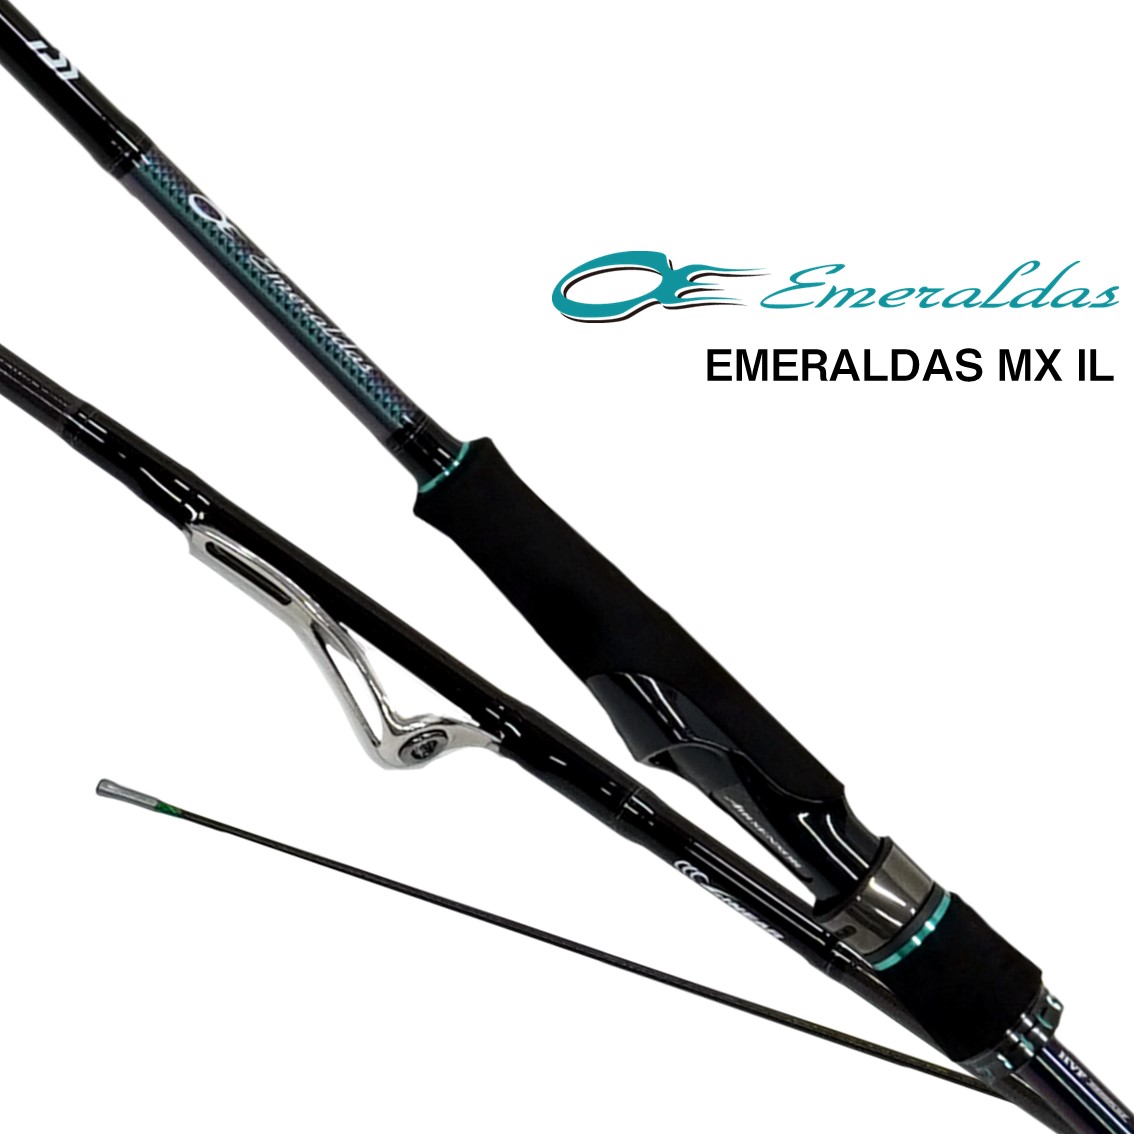 ダイワ 21 エメラルダスmx Il 86m N エギングロッド 釣り具の販売 通販なら フィッシング遊 Web本店 ダイワ シマノ がまかつの釣具ならおまかせ